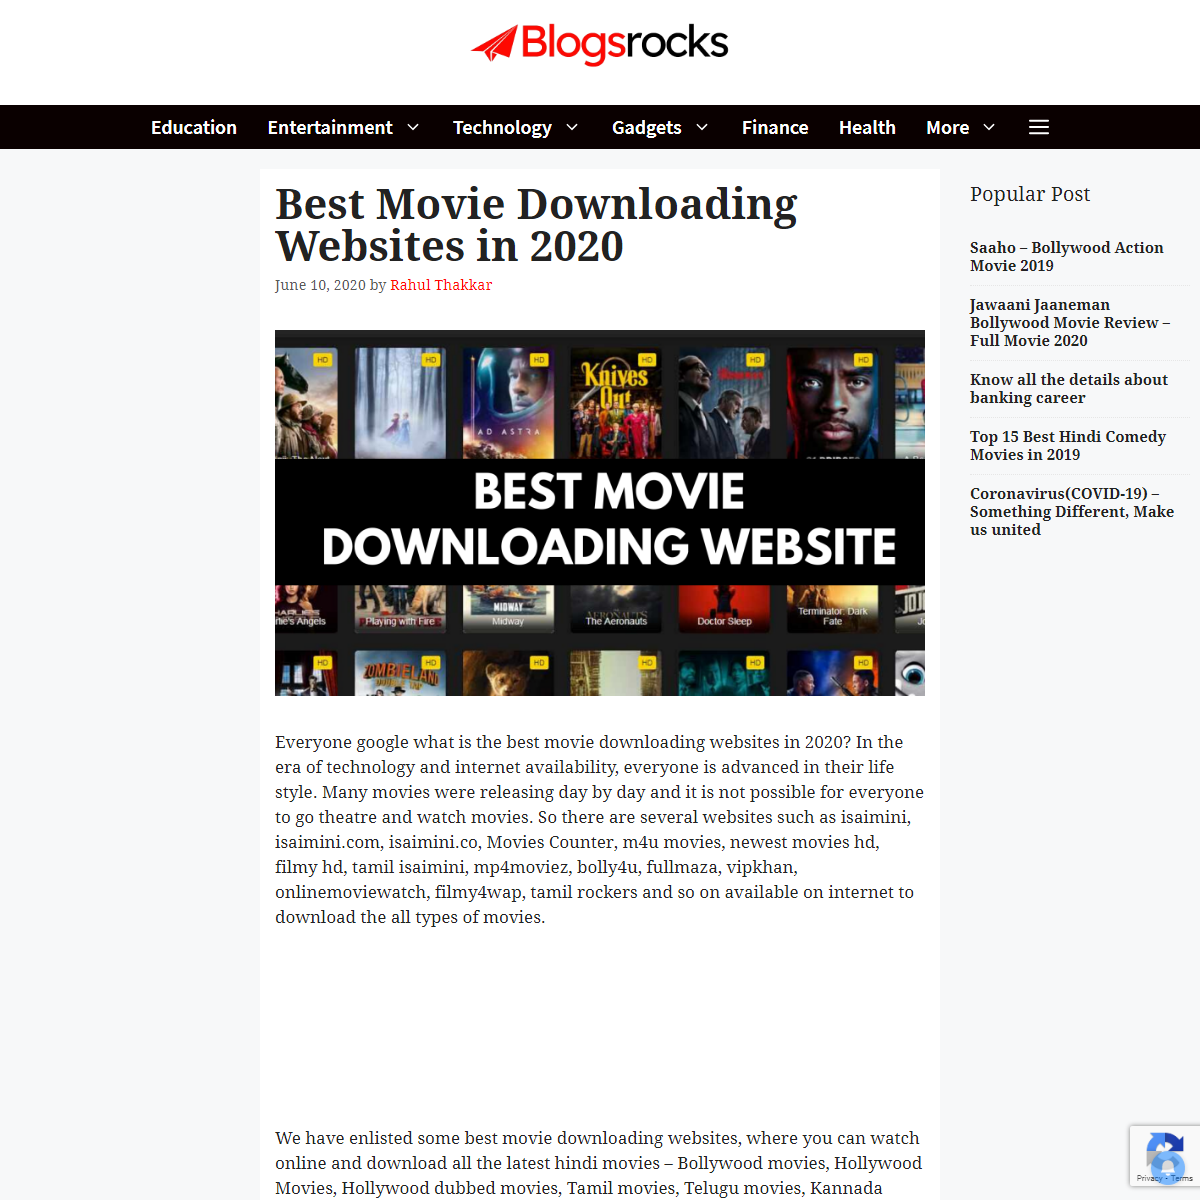 A complete backup of https://blogsrocks.com/best-movie-downloading-websites/